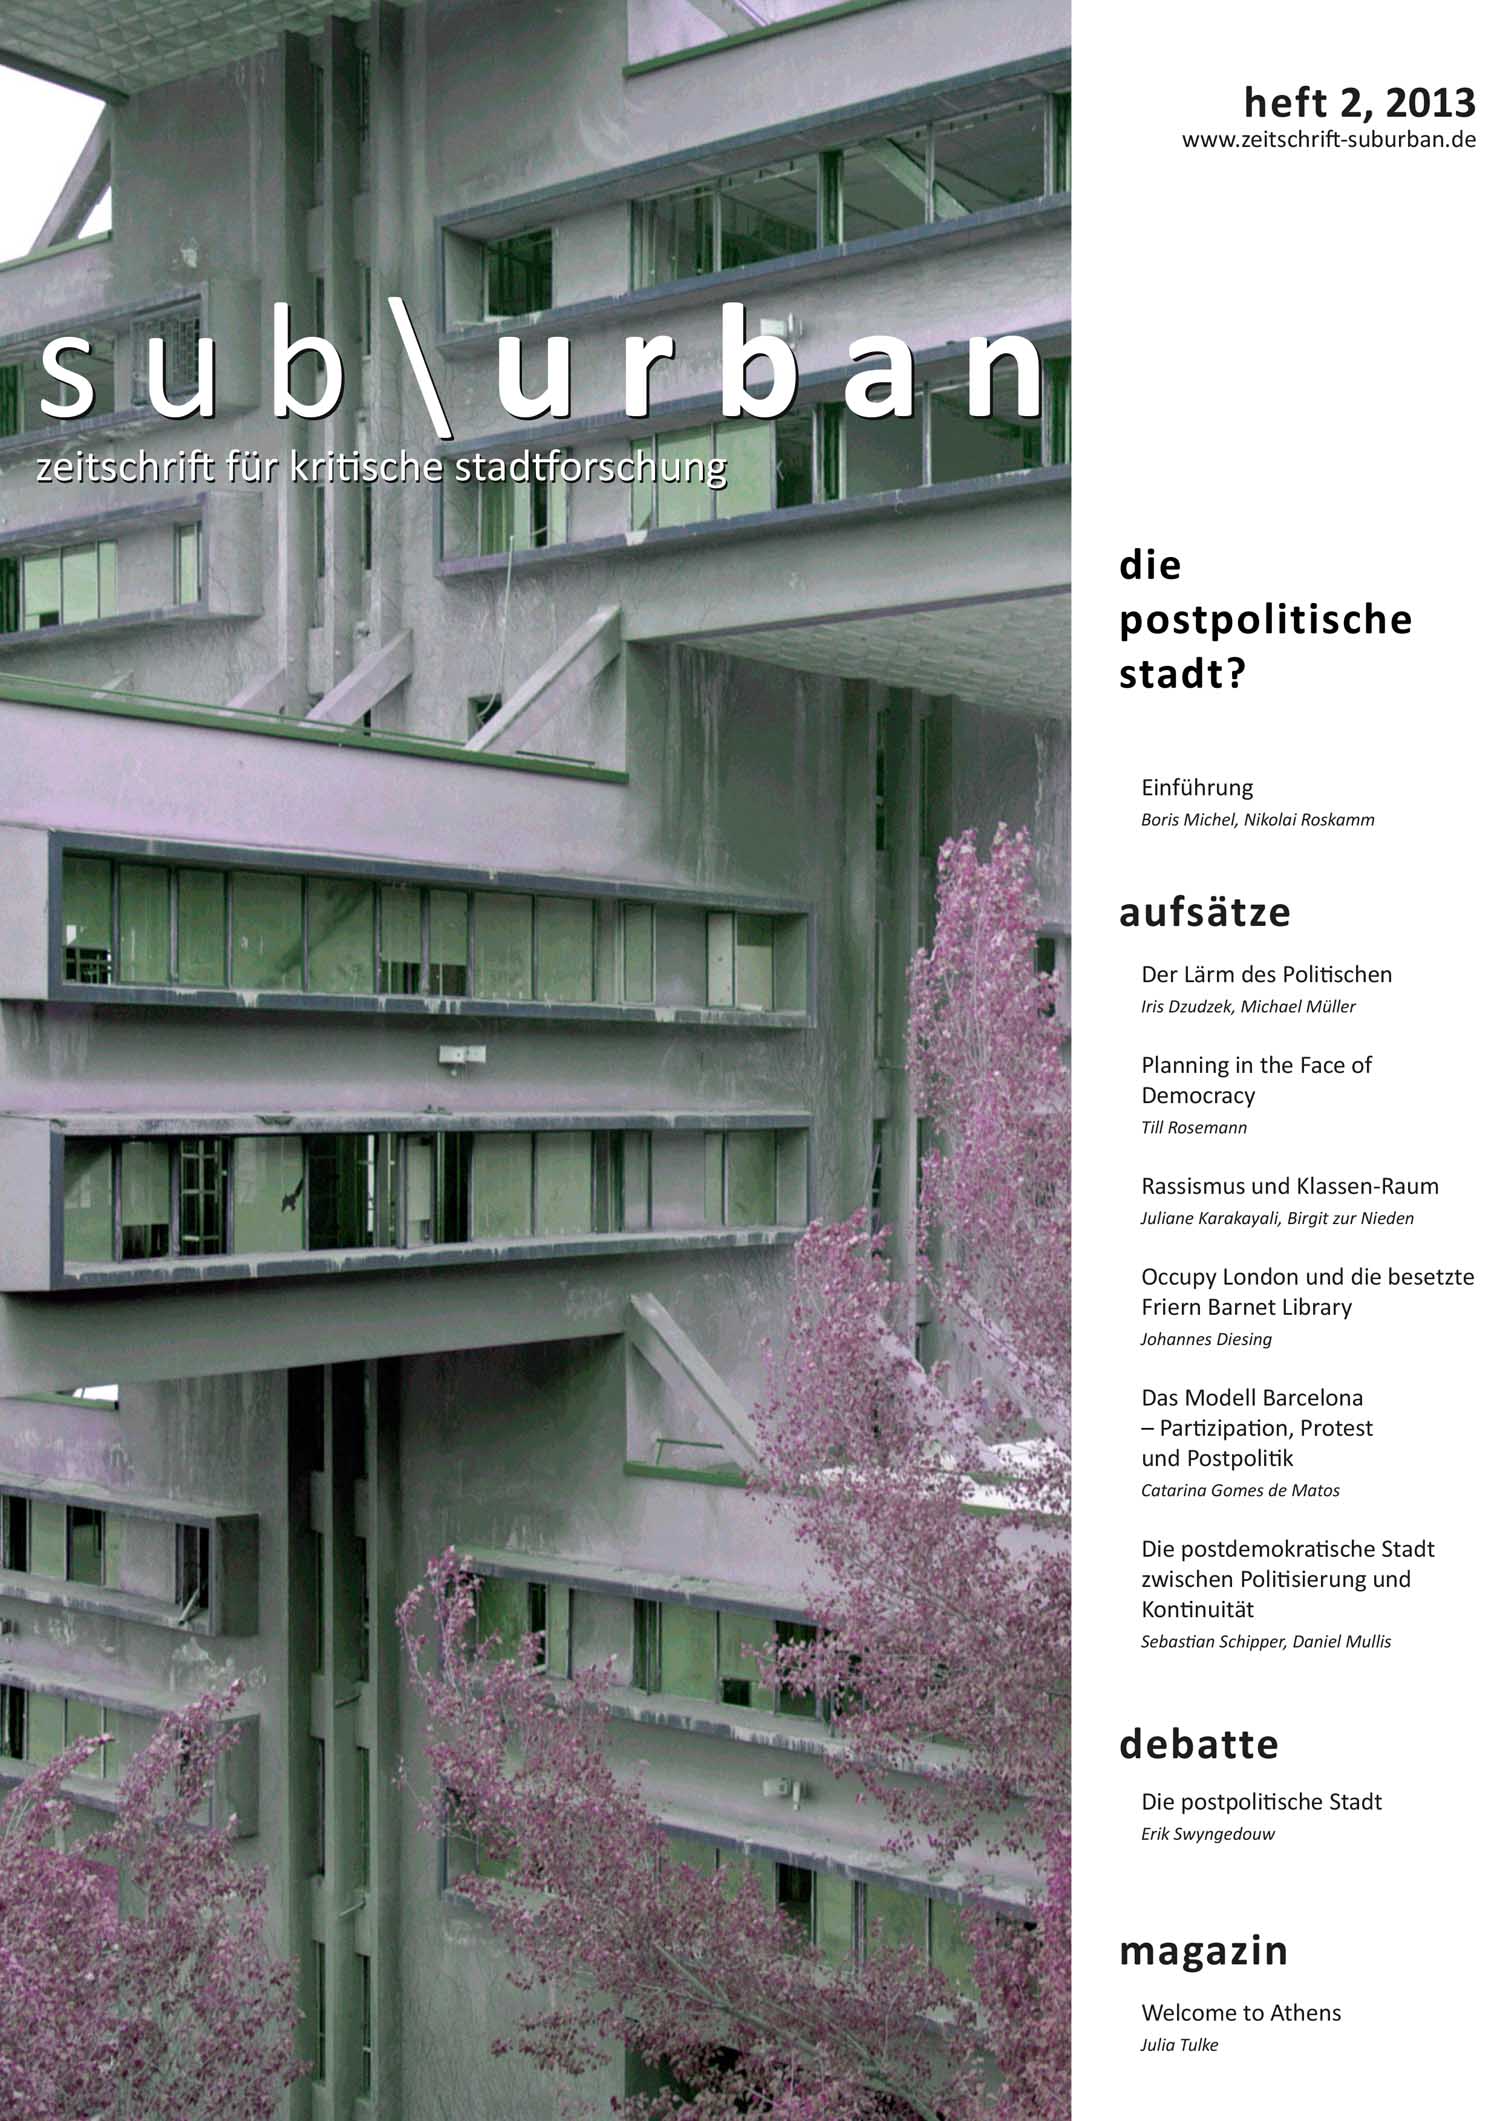 Heftcover Titelbild:  (Bd. 1 Nr. 2 (2013): Die postpolitische Stadt?)